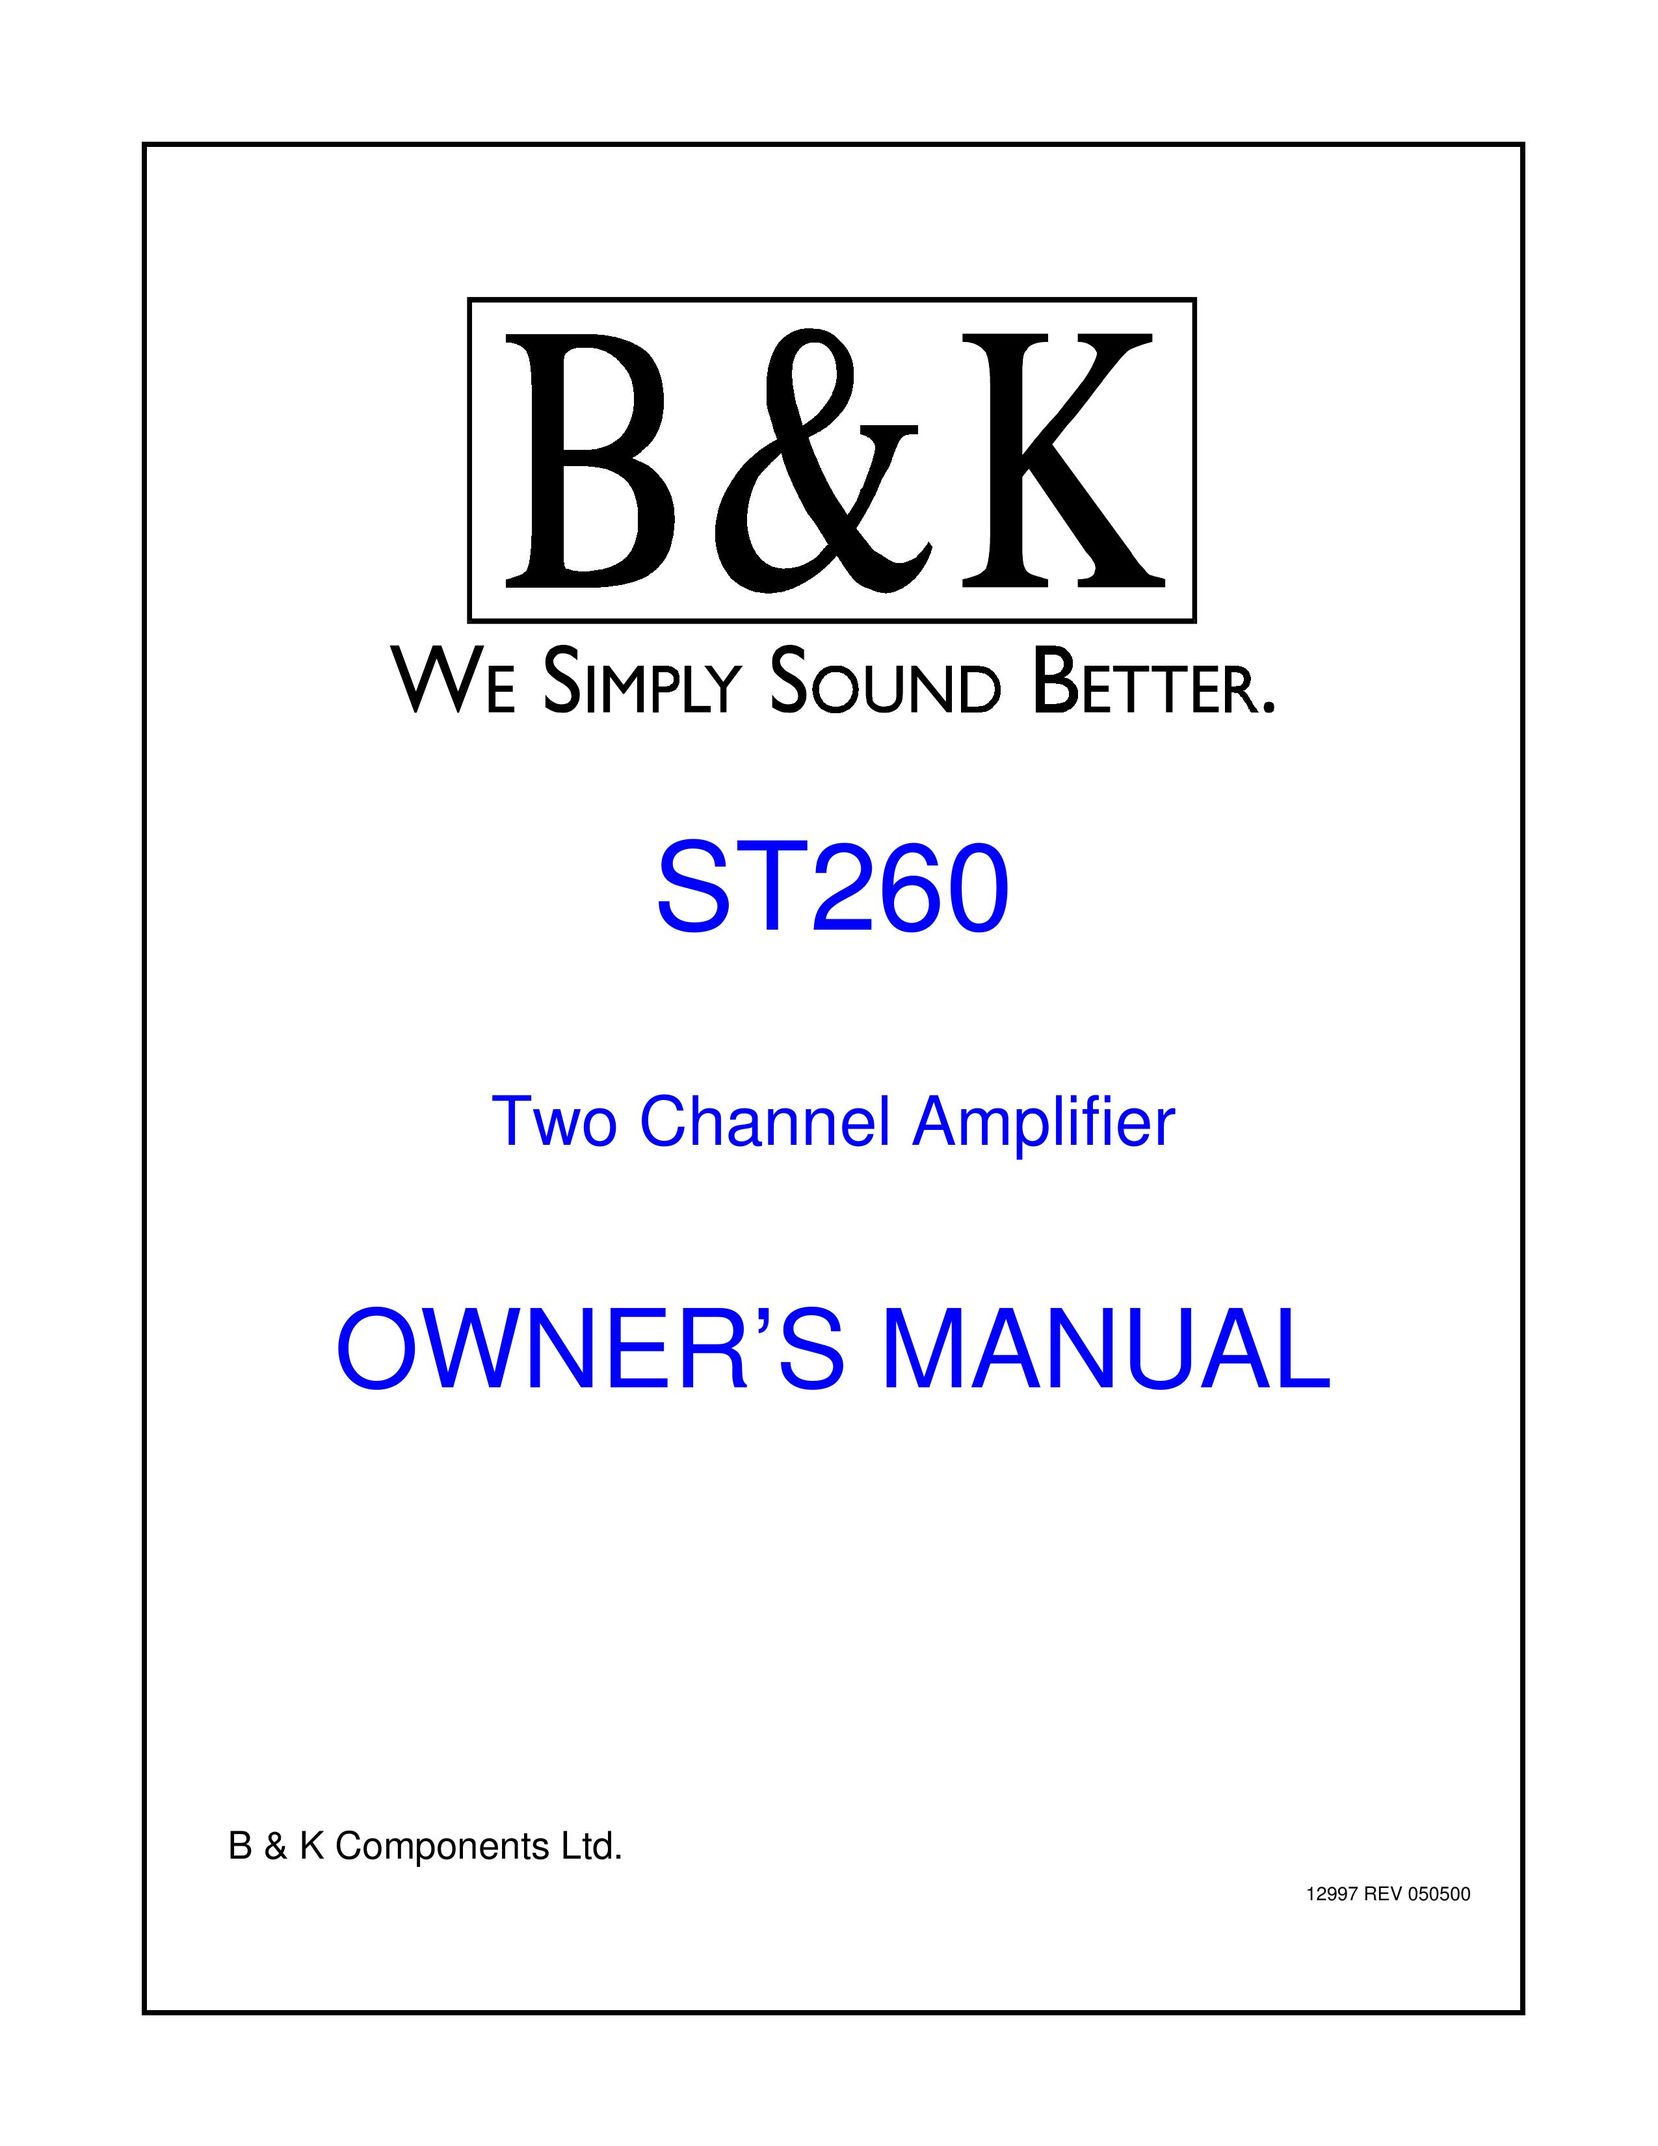 B&K ST260 Stereo Amplifier User Manual